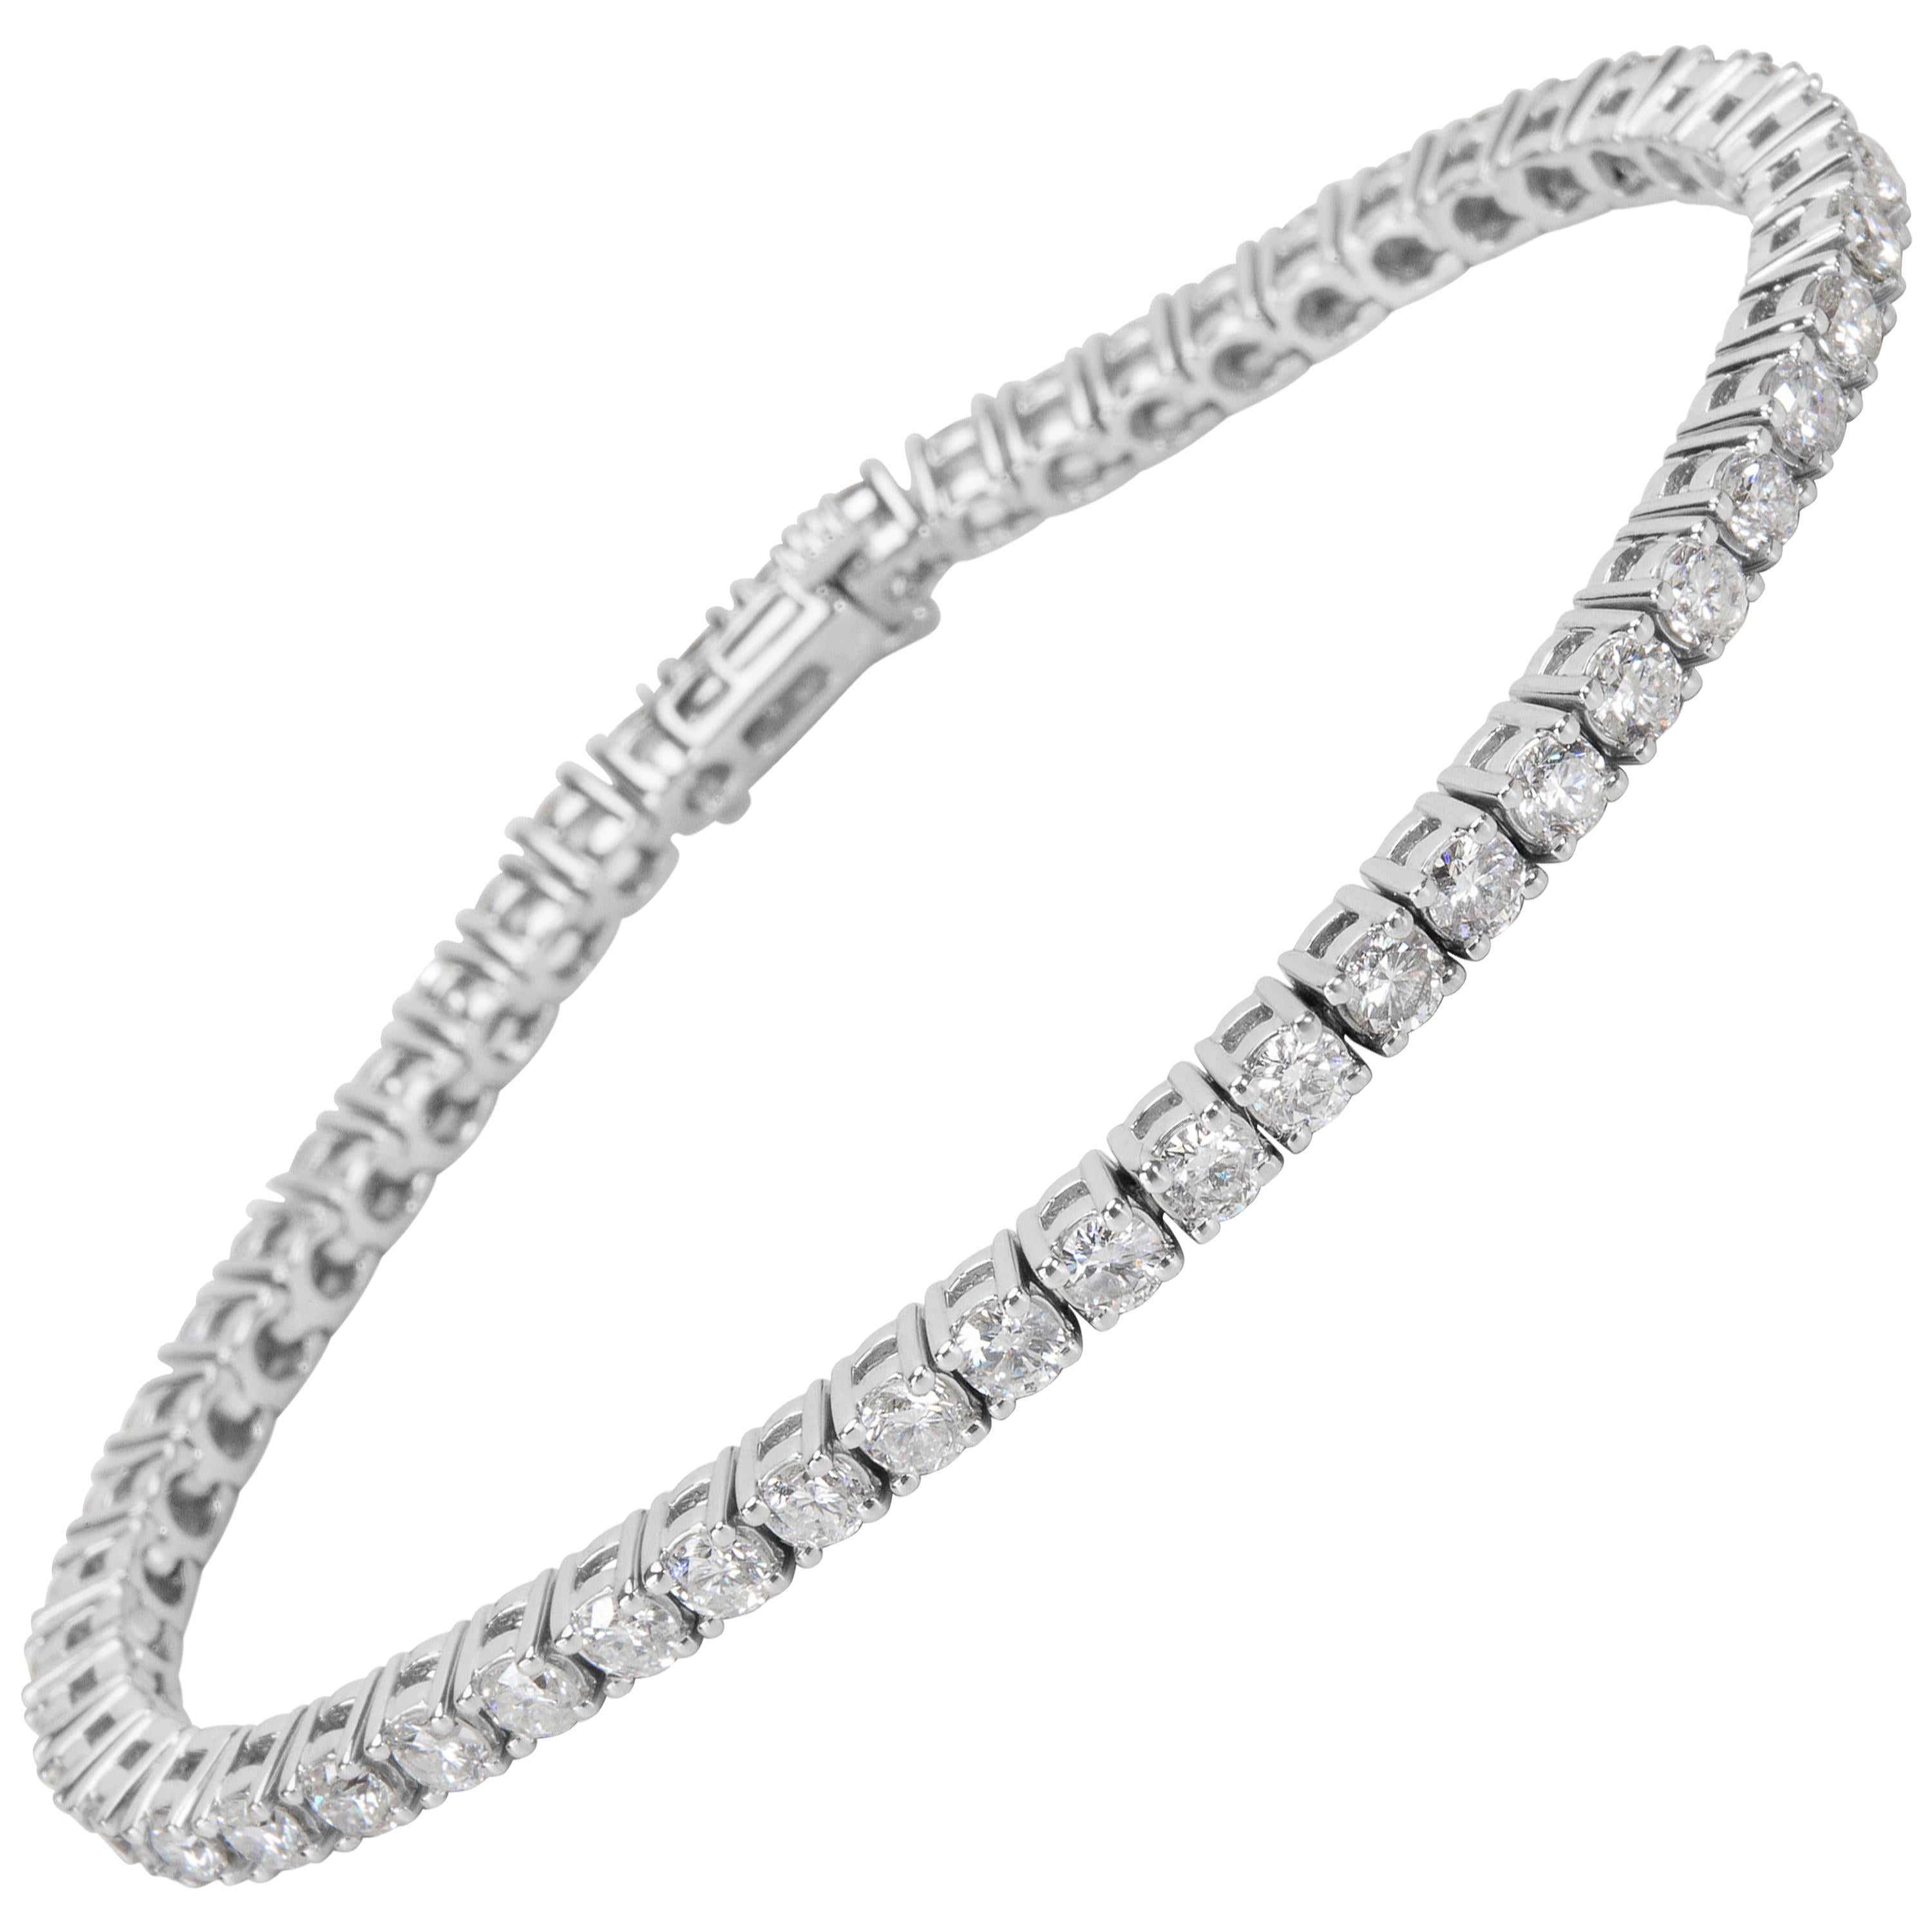 4 Prong Diamond Line Bracelet in 14 Karat White Gold '4.36 Carart'